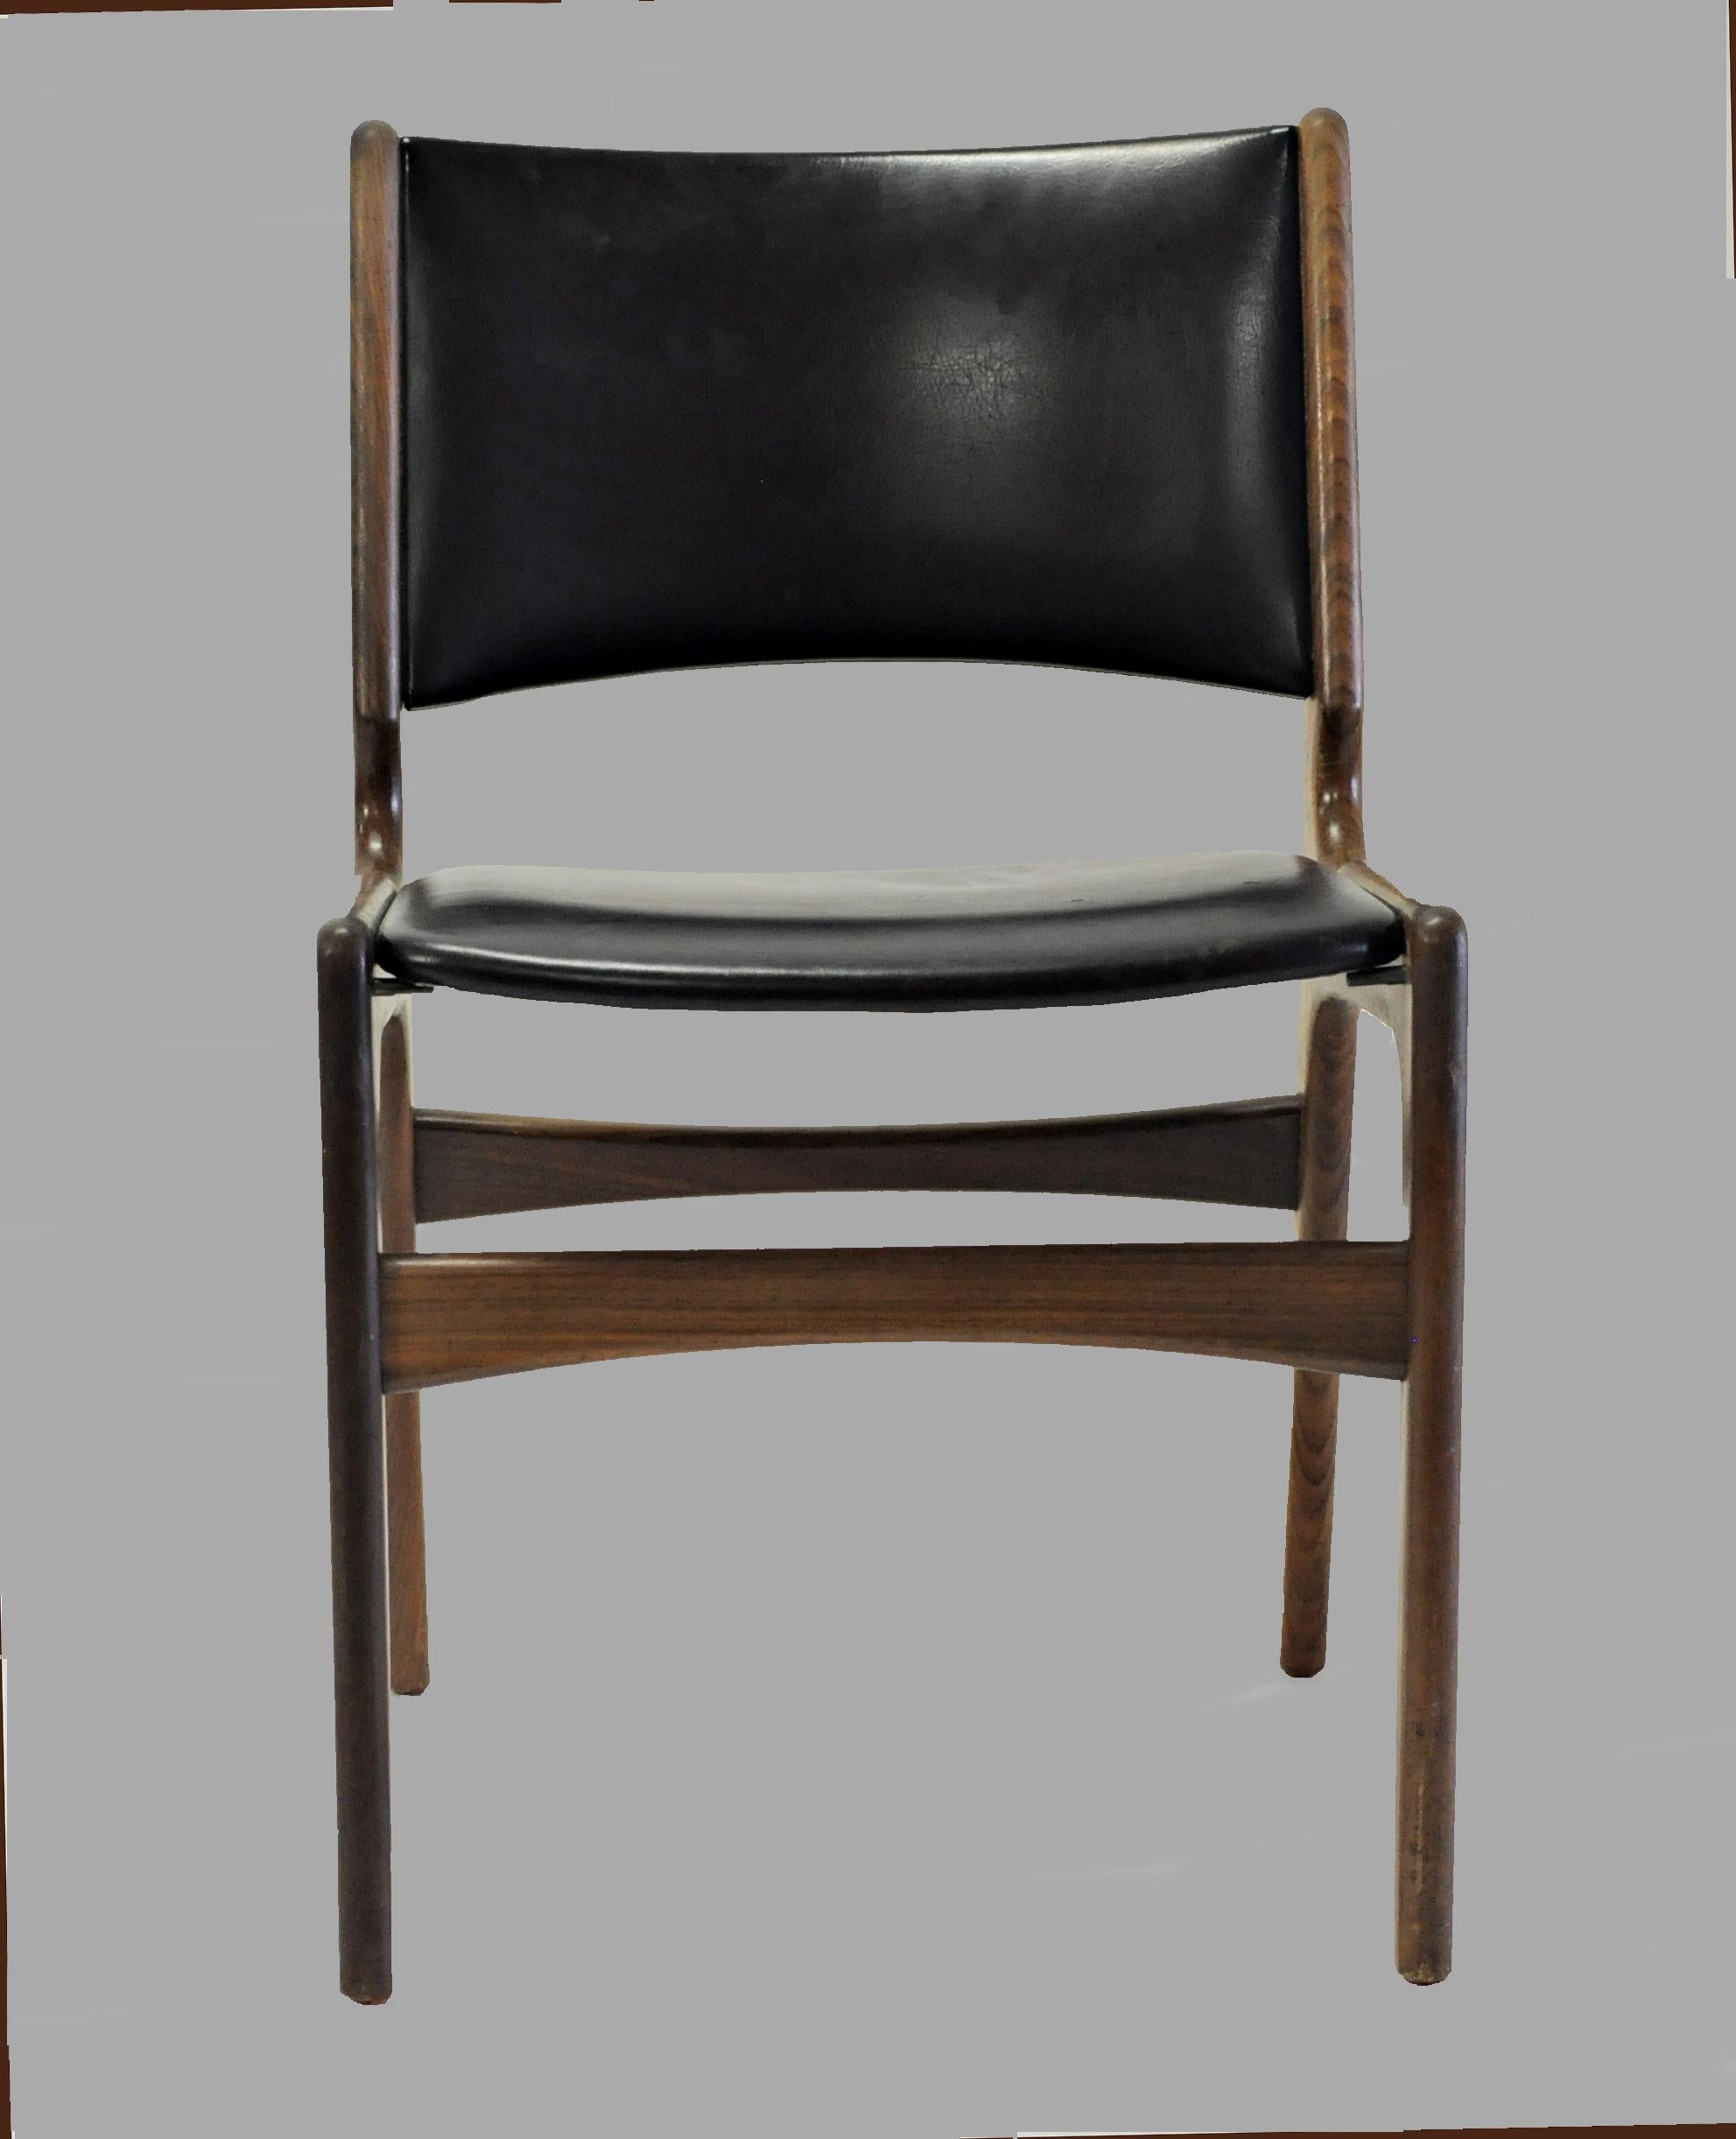 Seis sillas de comedor Erik Buch Refinished de teca maciza, tapicería a medida

Las sillas tienen un sólido armazón de teca y, como todas las sillas de Erik Buch, se caracterizan por sus materiales de alta calidad, su sólida artesanía, su estética